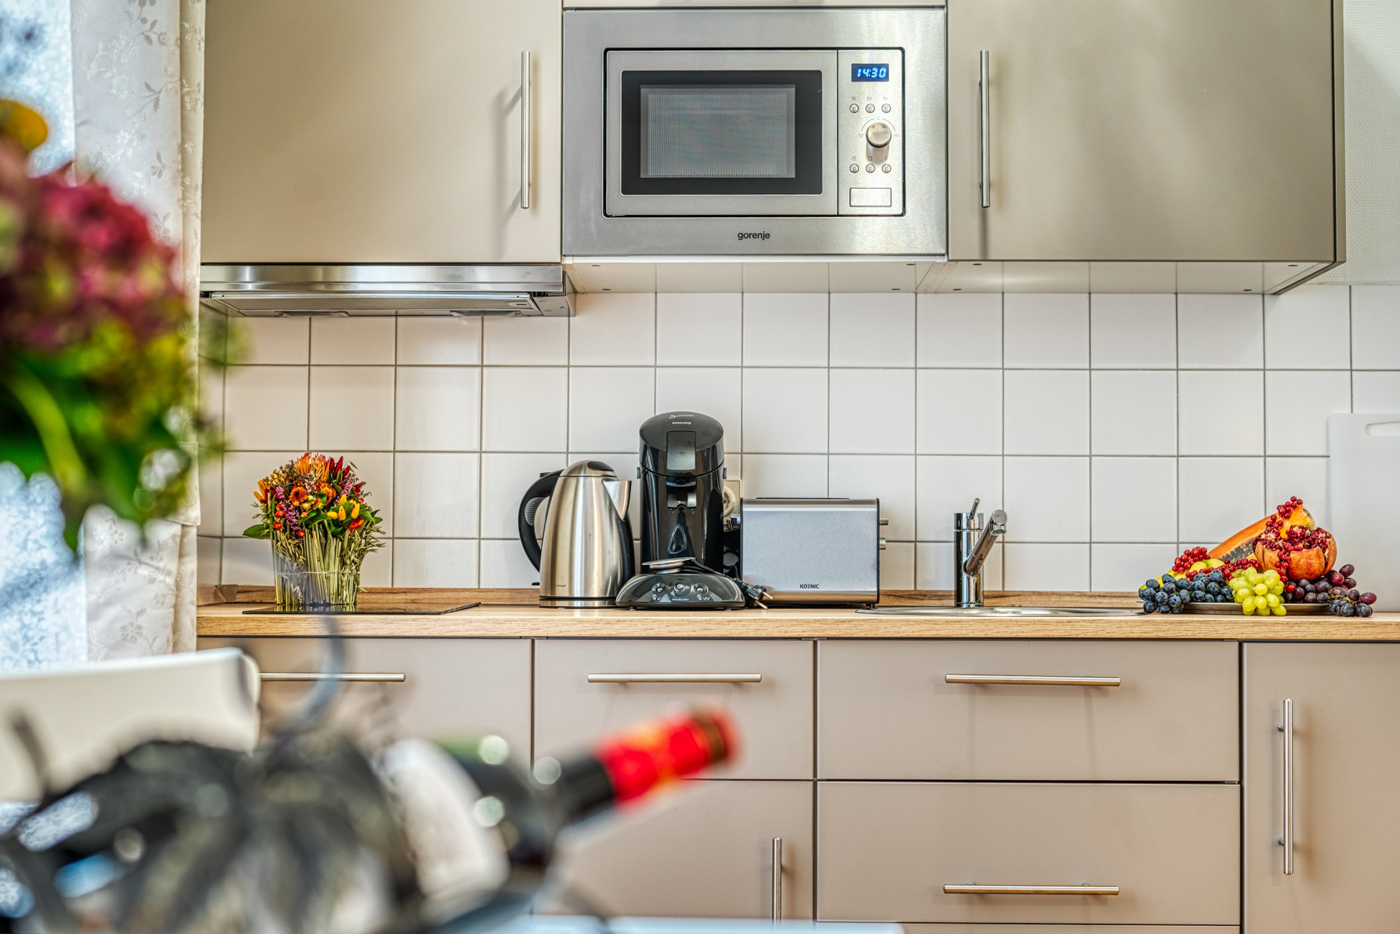 Appartement-Küche mit Wasserkocher, Mikro, Kaffeemaschine und Toaster im Hotel in Baden-Baden.